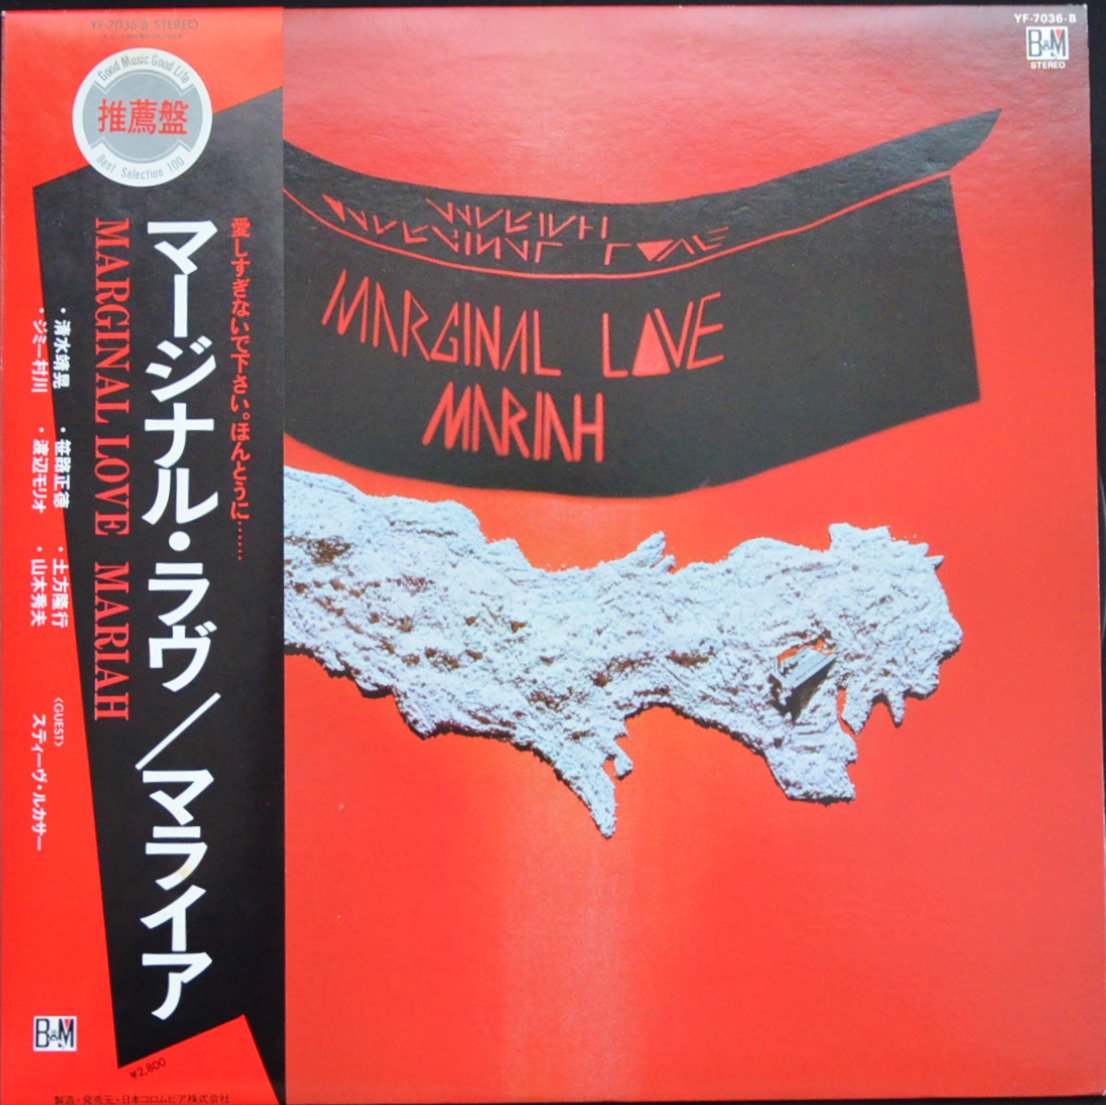 マライア (マライア・プロジェクト) MARIAH / マージナル・ラヴ MARGINAL LOVE (LP)